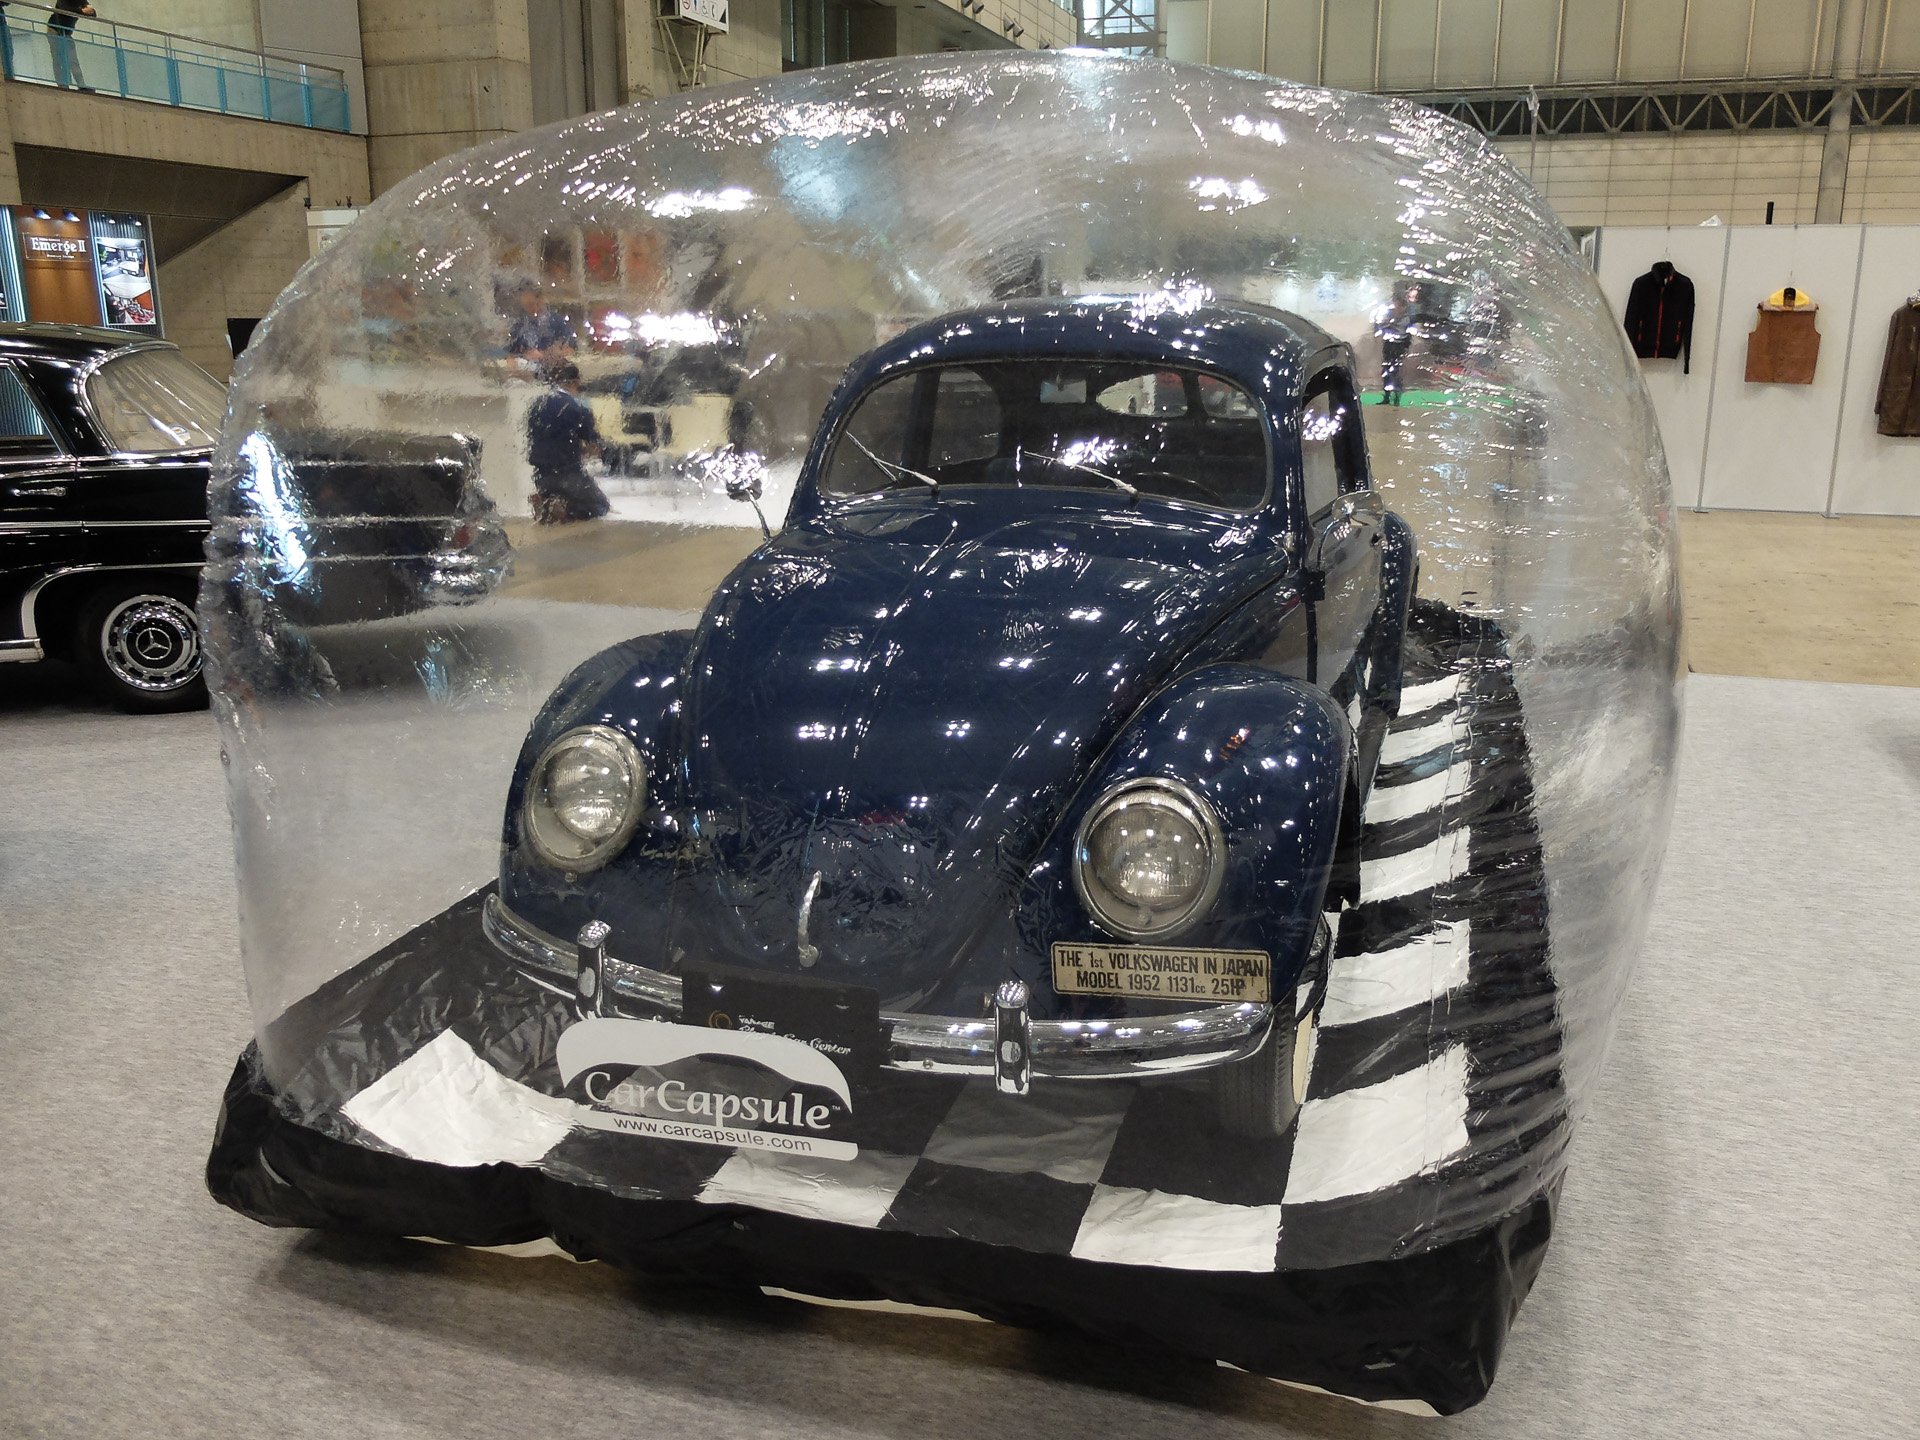 ヤナセ 愛車を バブル状態 で保管する カーカプセル Car Watch